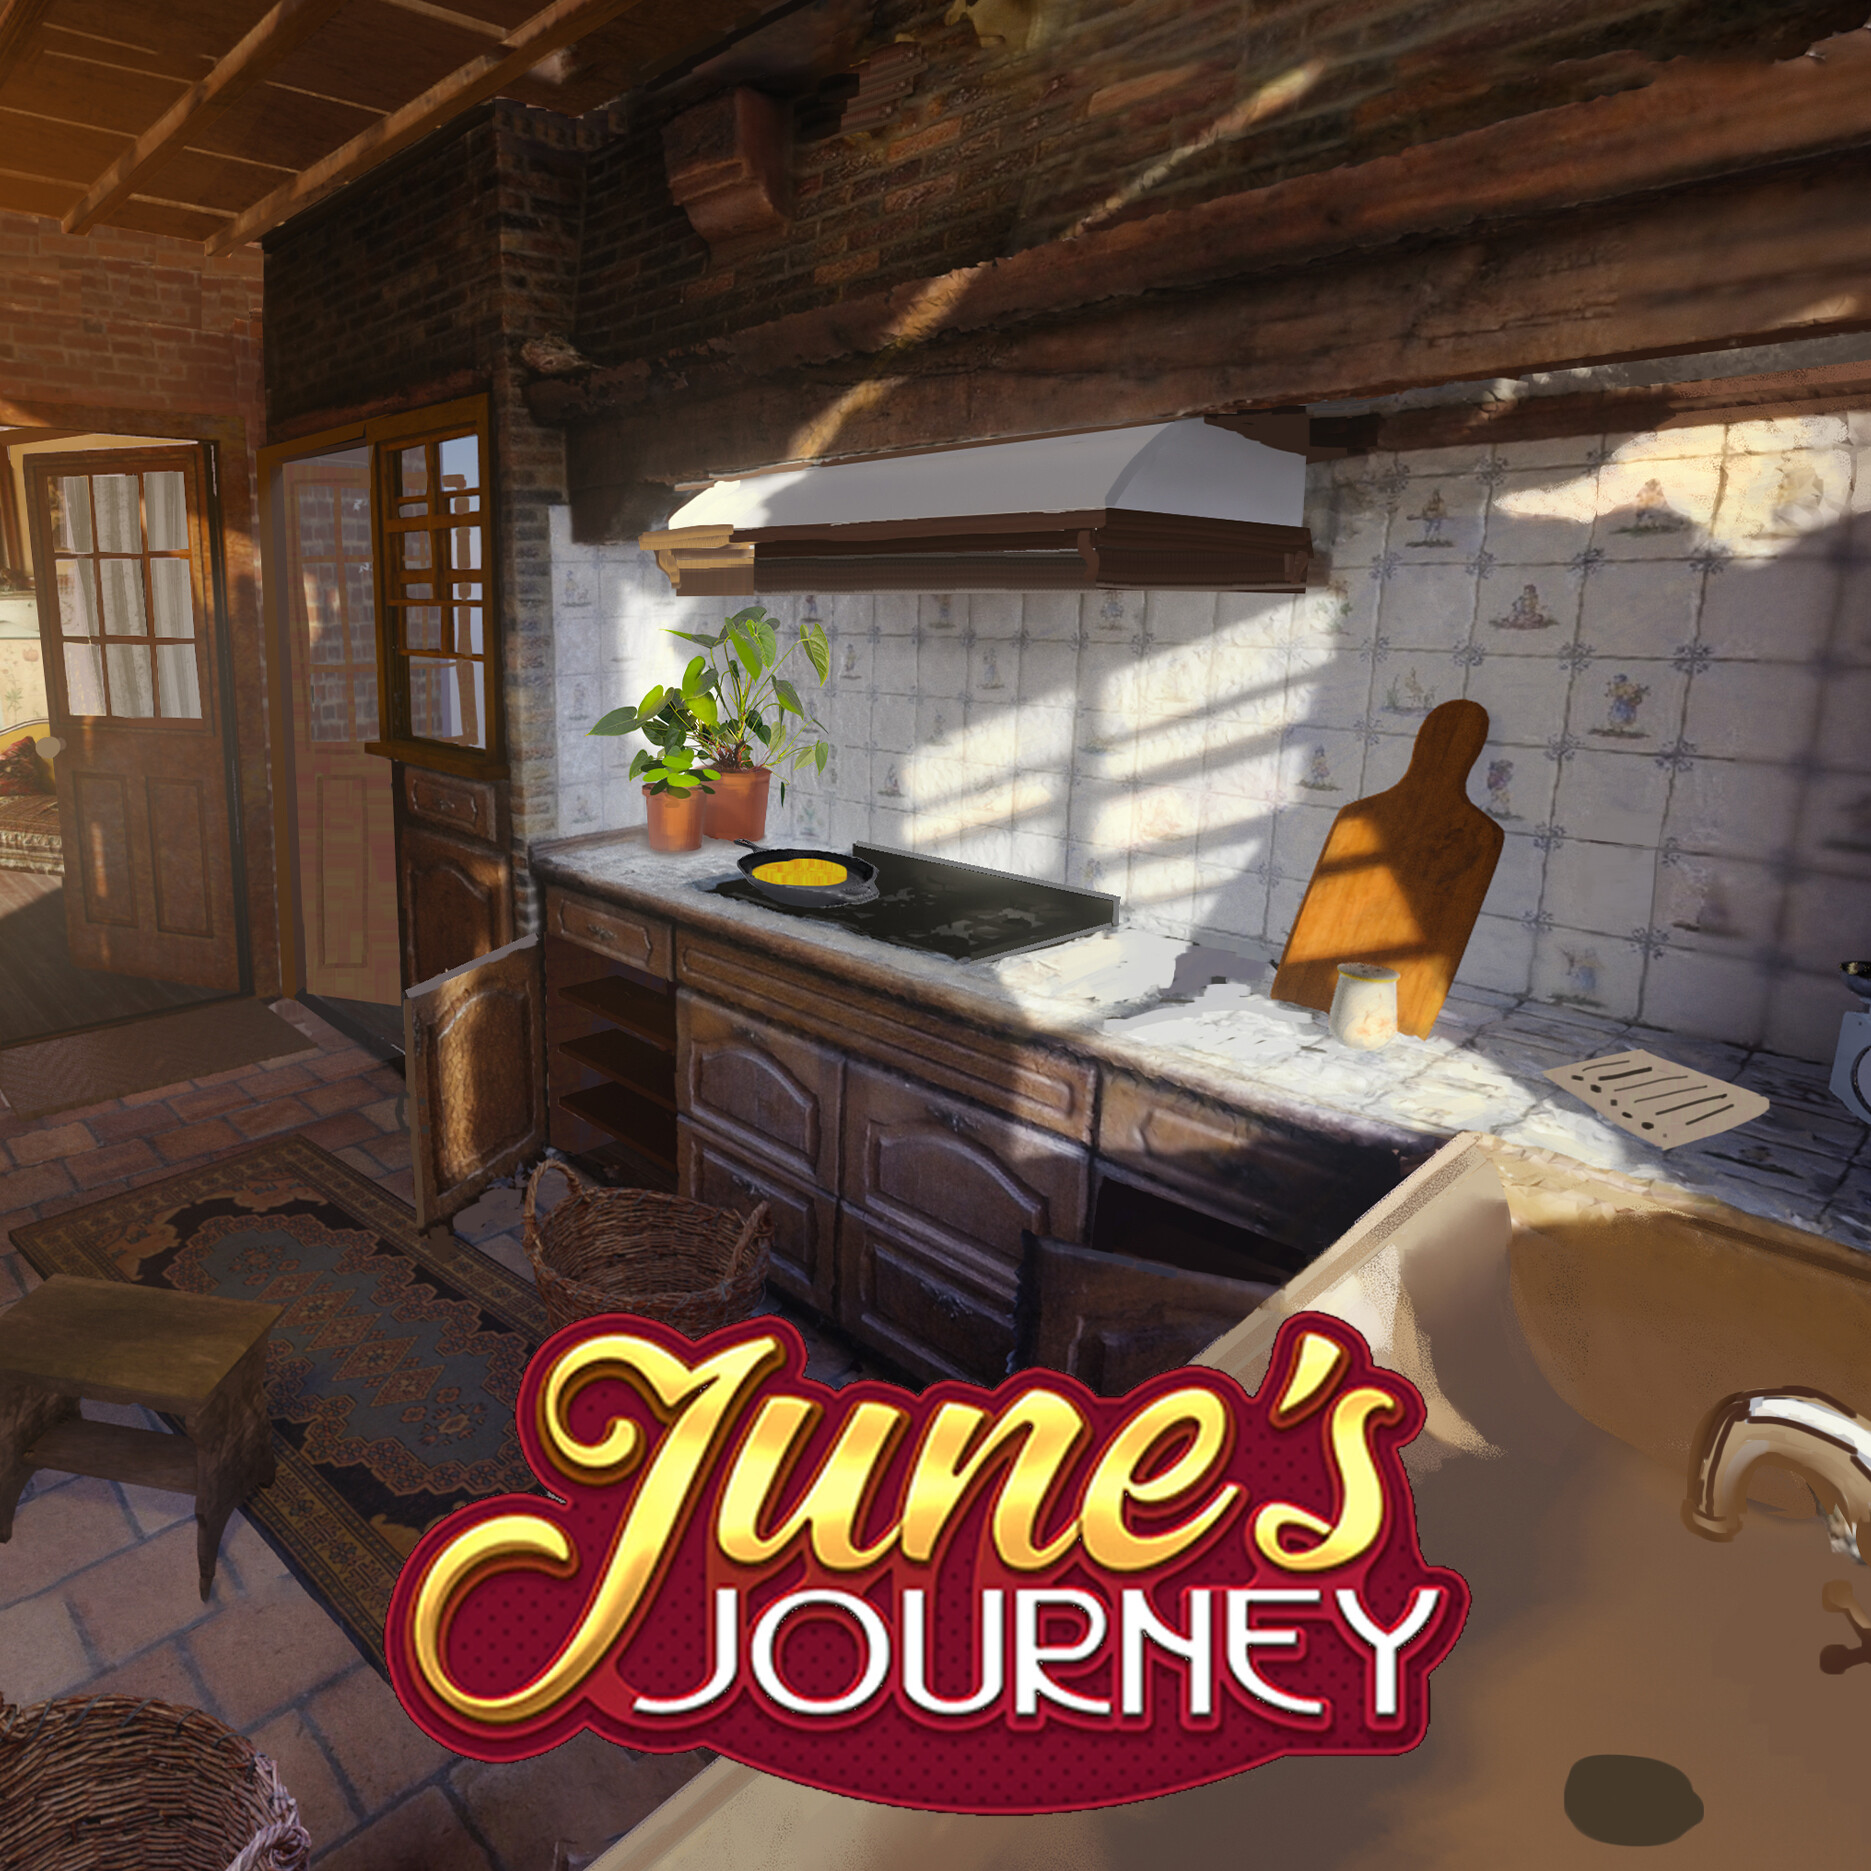 june's journey hayes kitchen